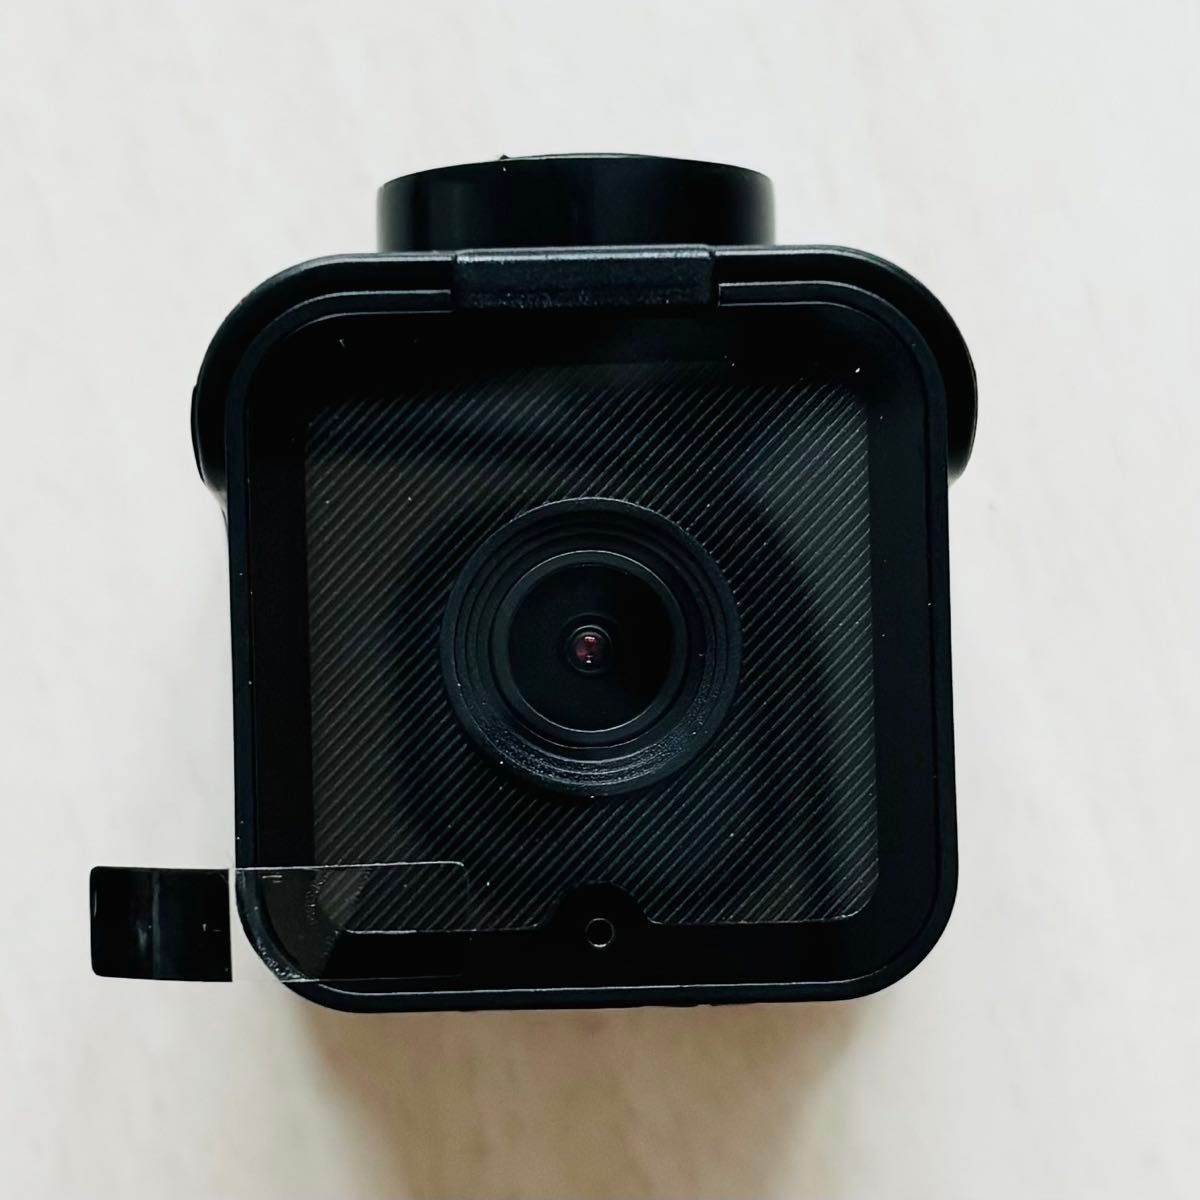 アクションカメラ WiFi 小型 防水 256GB ドラレコ ボディカメラ  ブラック 多機能